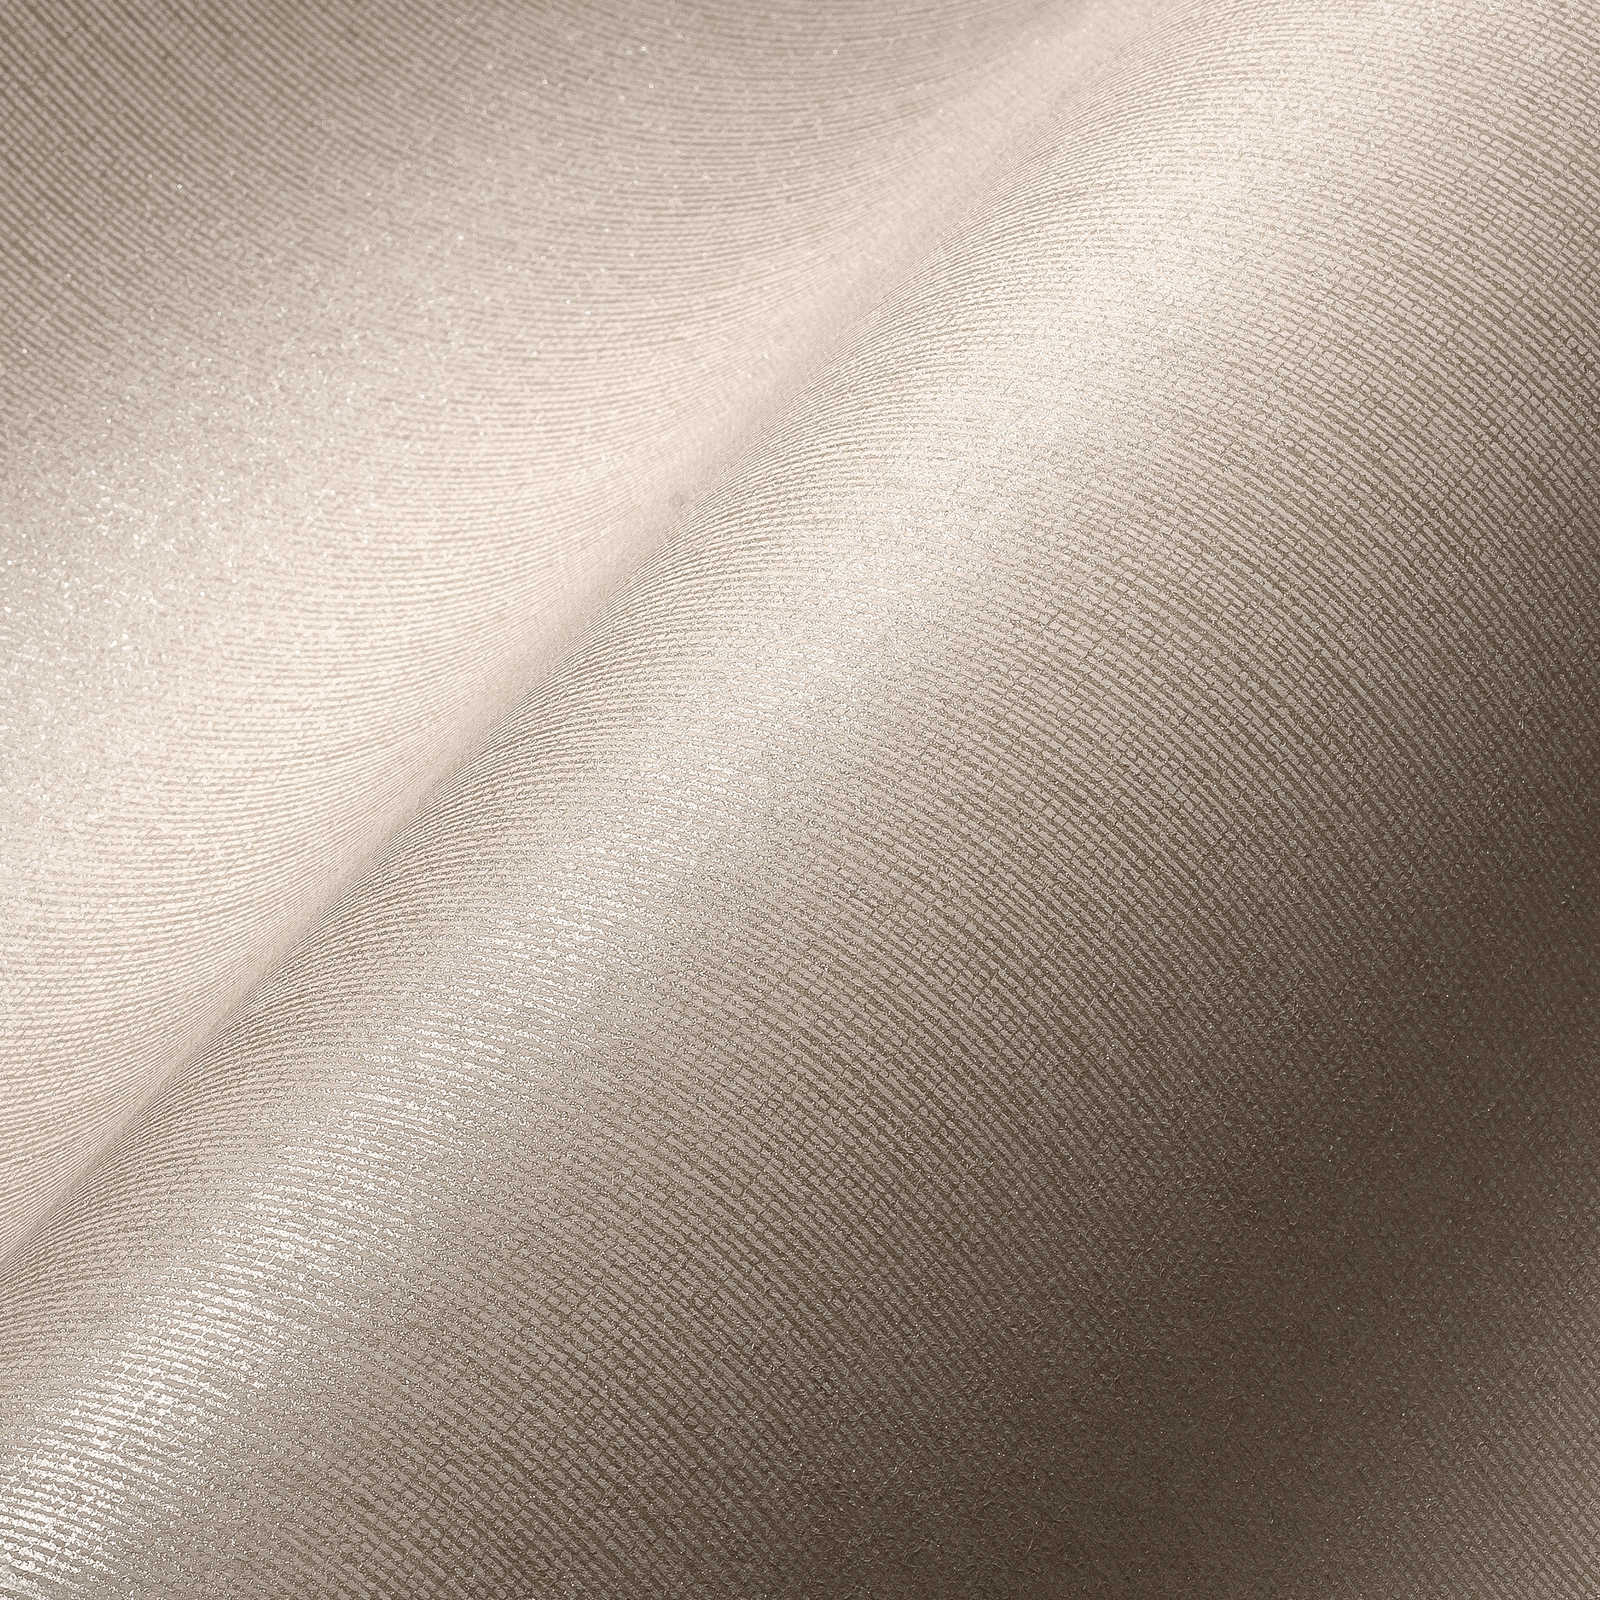             Carta da parati in tessuto non tessuto beige chiaro con effetto lucido e aspetto tessile - beige
        